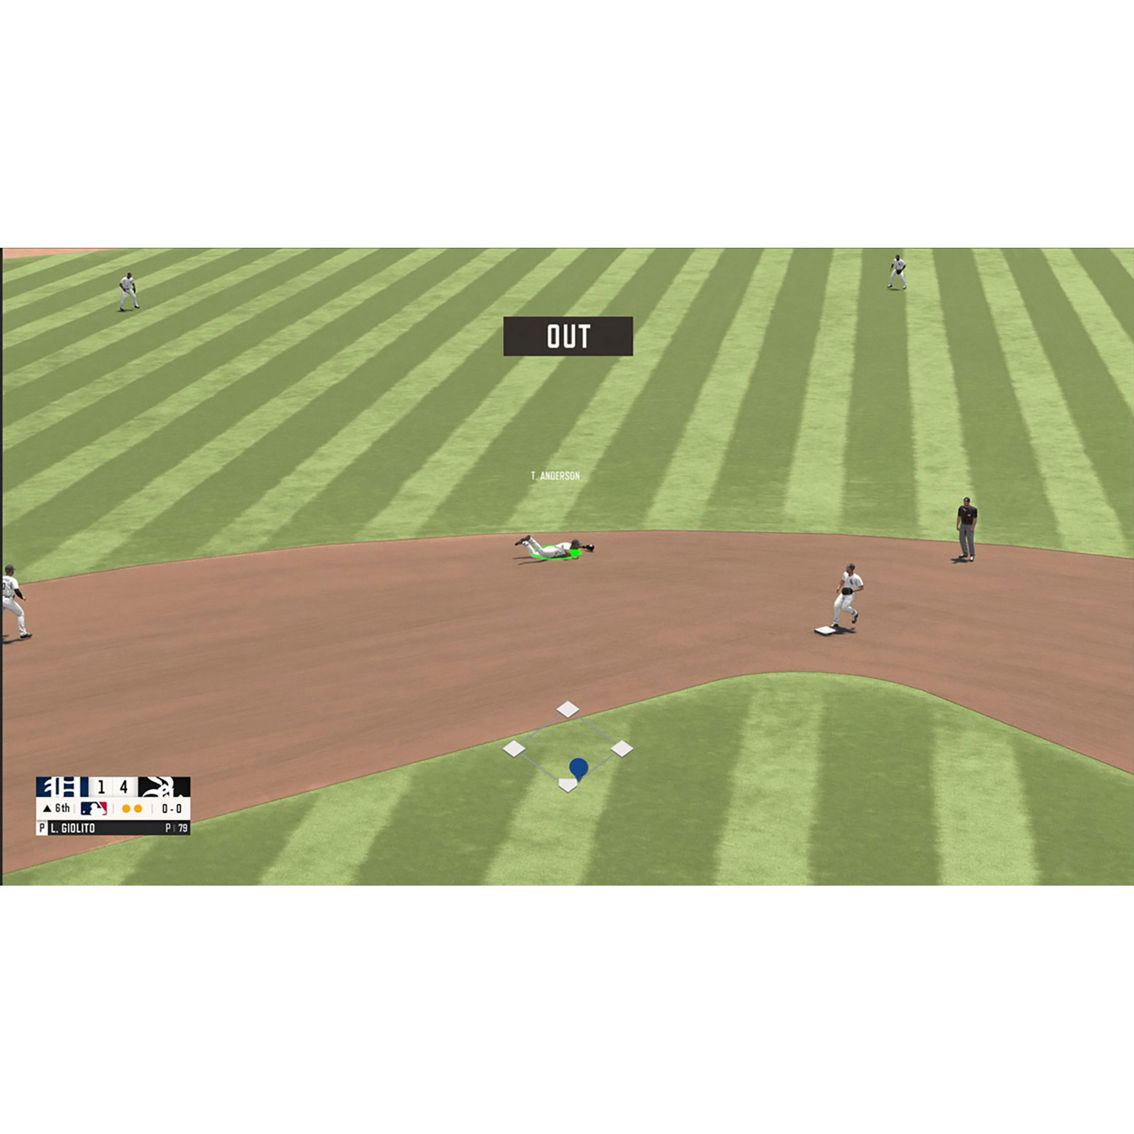 MLB RBI Baseball 21 (PS4) - Image 5 of 6